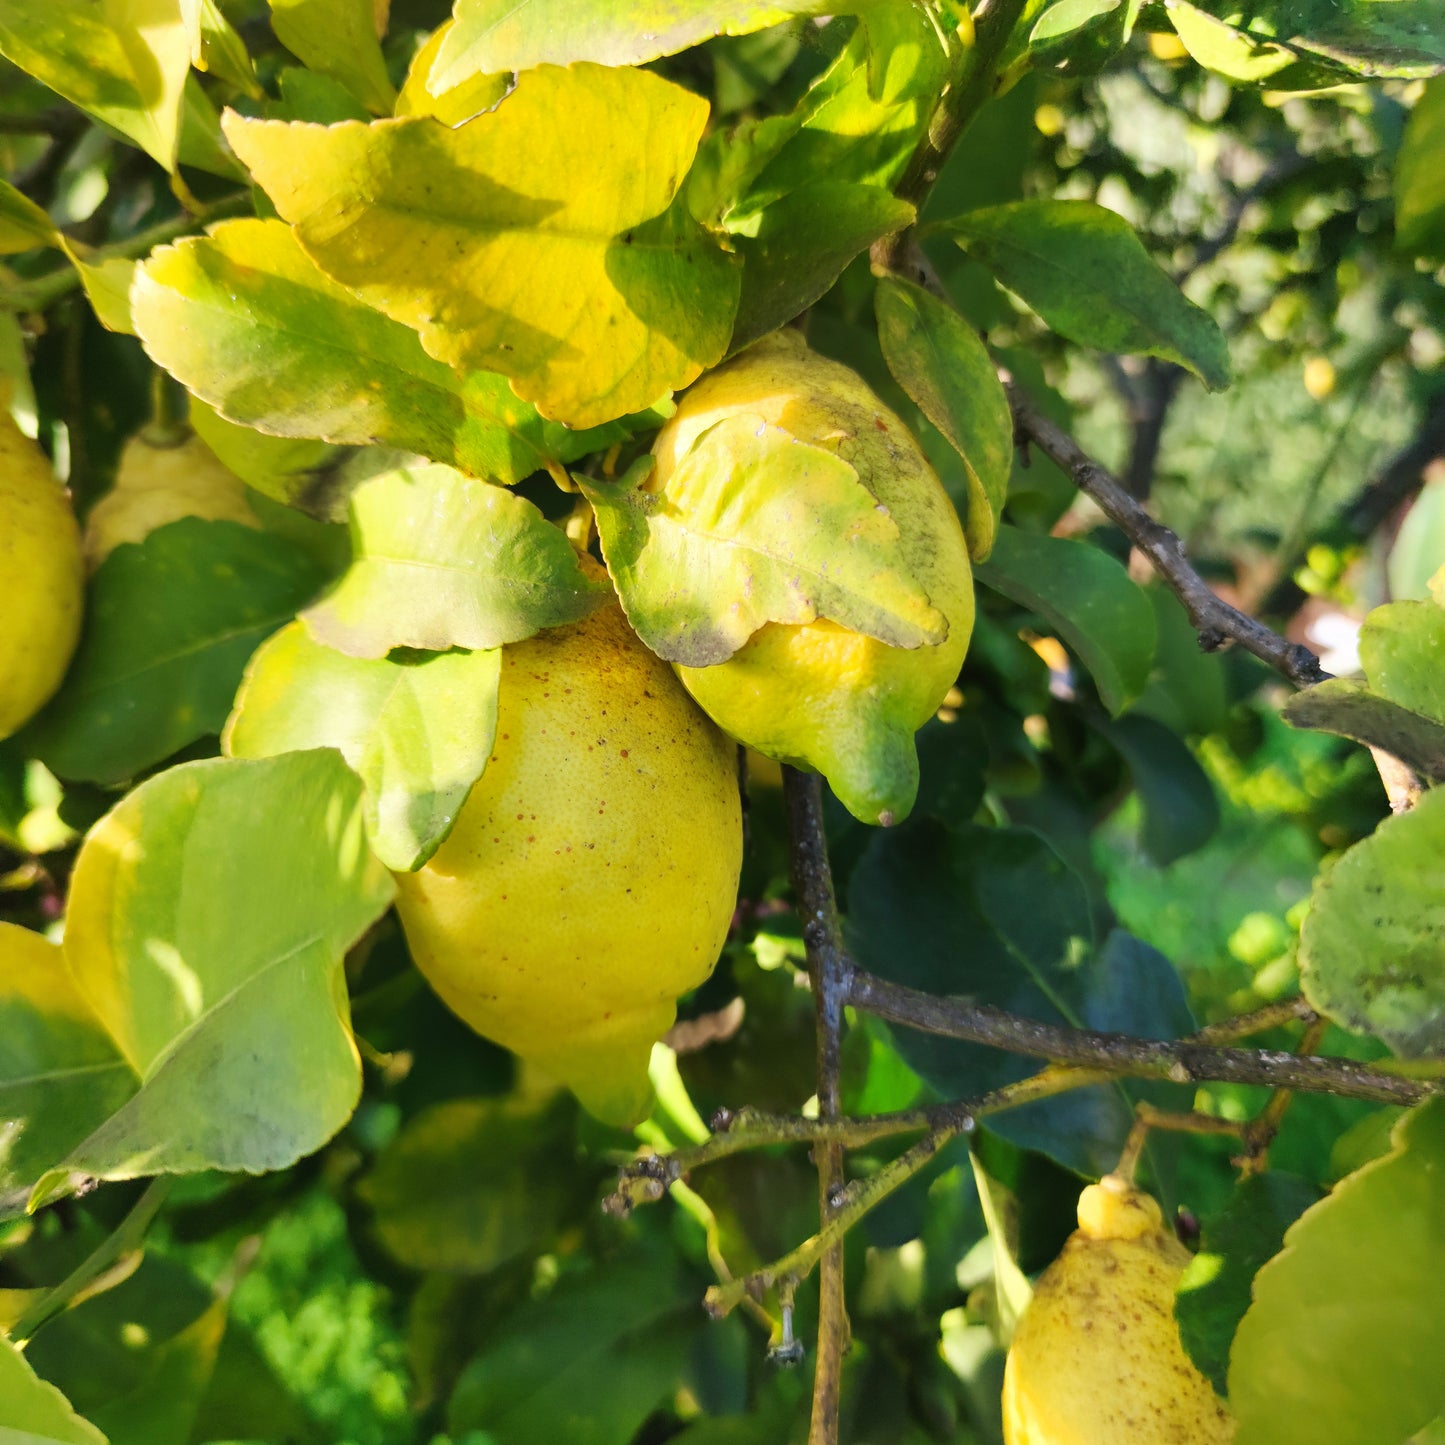 Citrons sardes non traités cultivés naturellement, campagne de Sennori (SS)